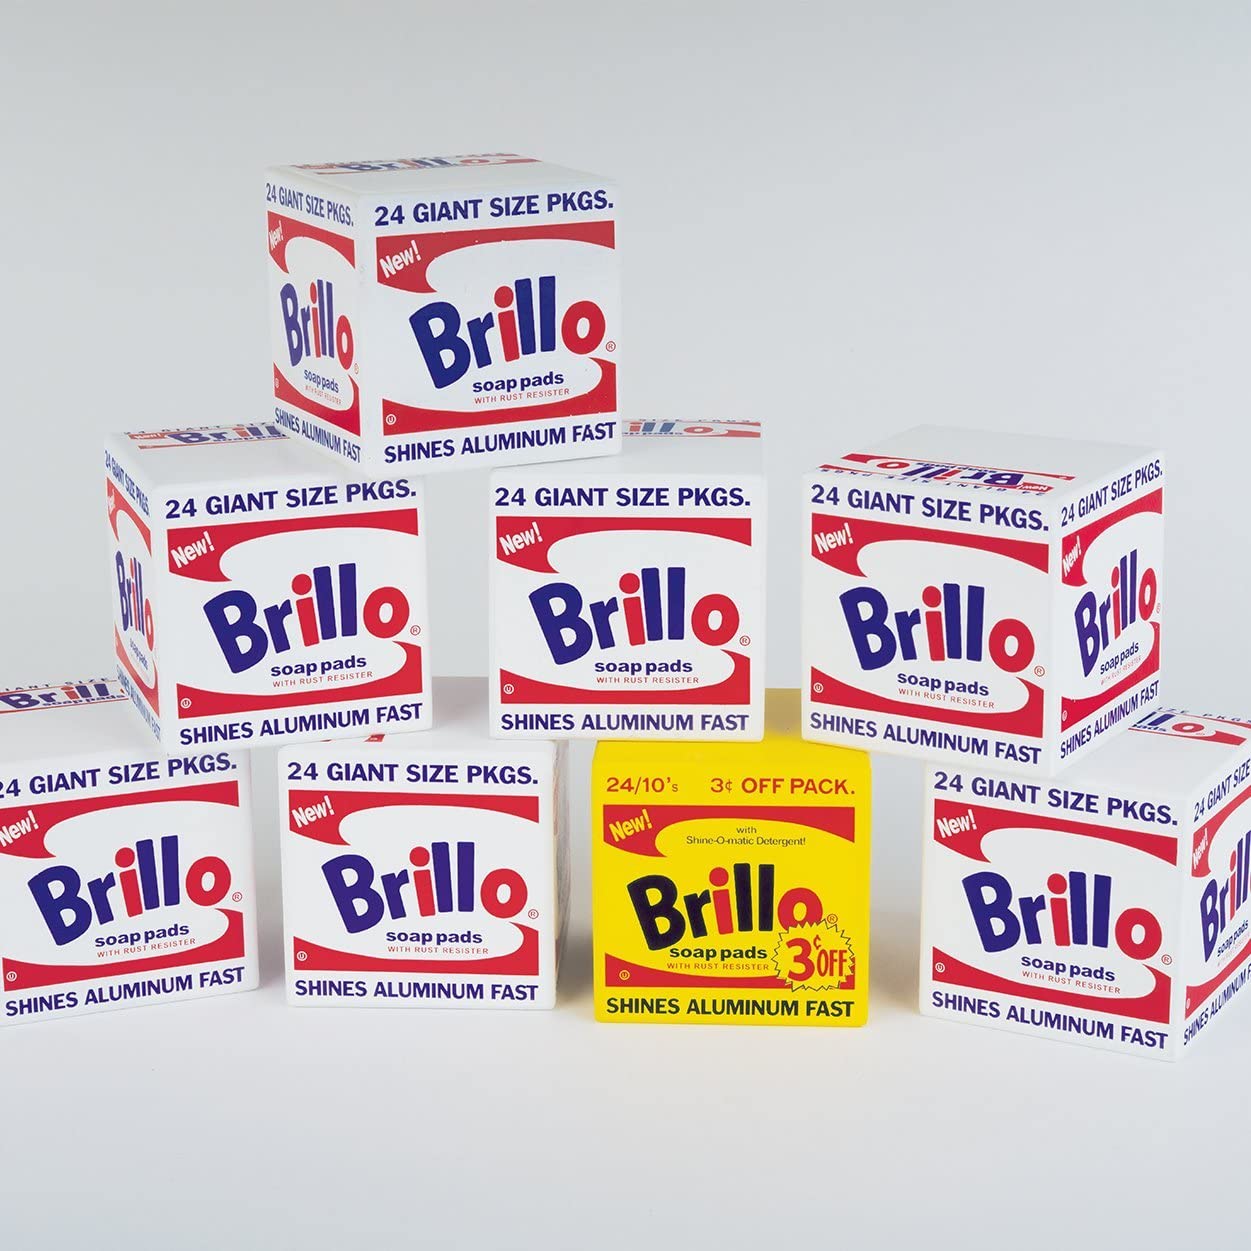 Warhol Brillo Wood Blocks